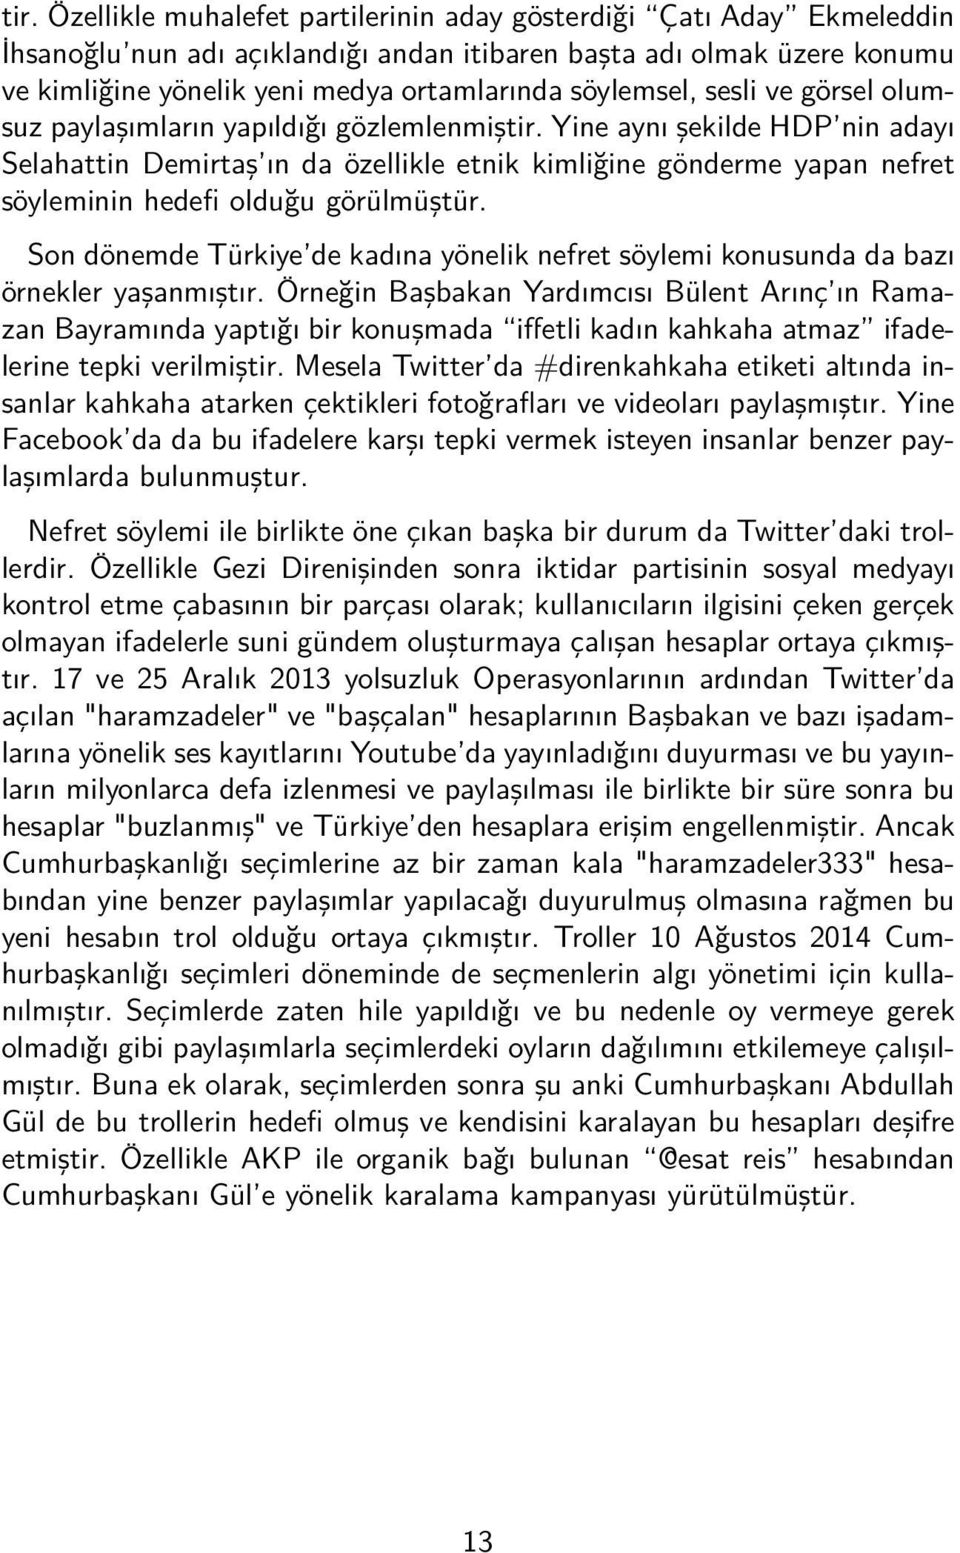 Yine aynı şekilde HDP nin adayı Selahattin Demirtaş ın da özellikle etnik kimliğine gönderme yapan nefret söyleminin hedefi olduğu görülmüştür.